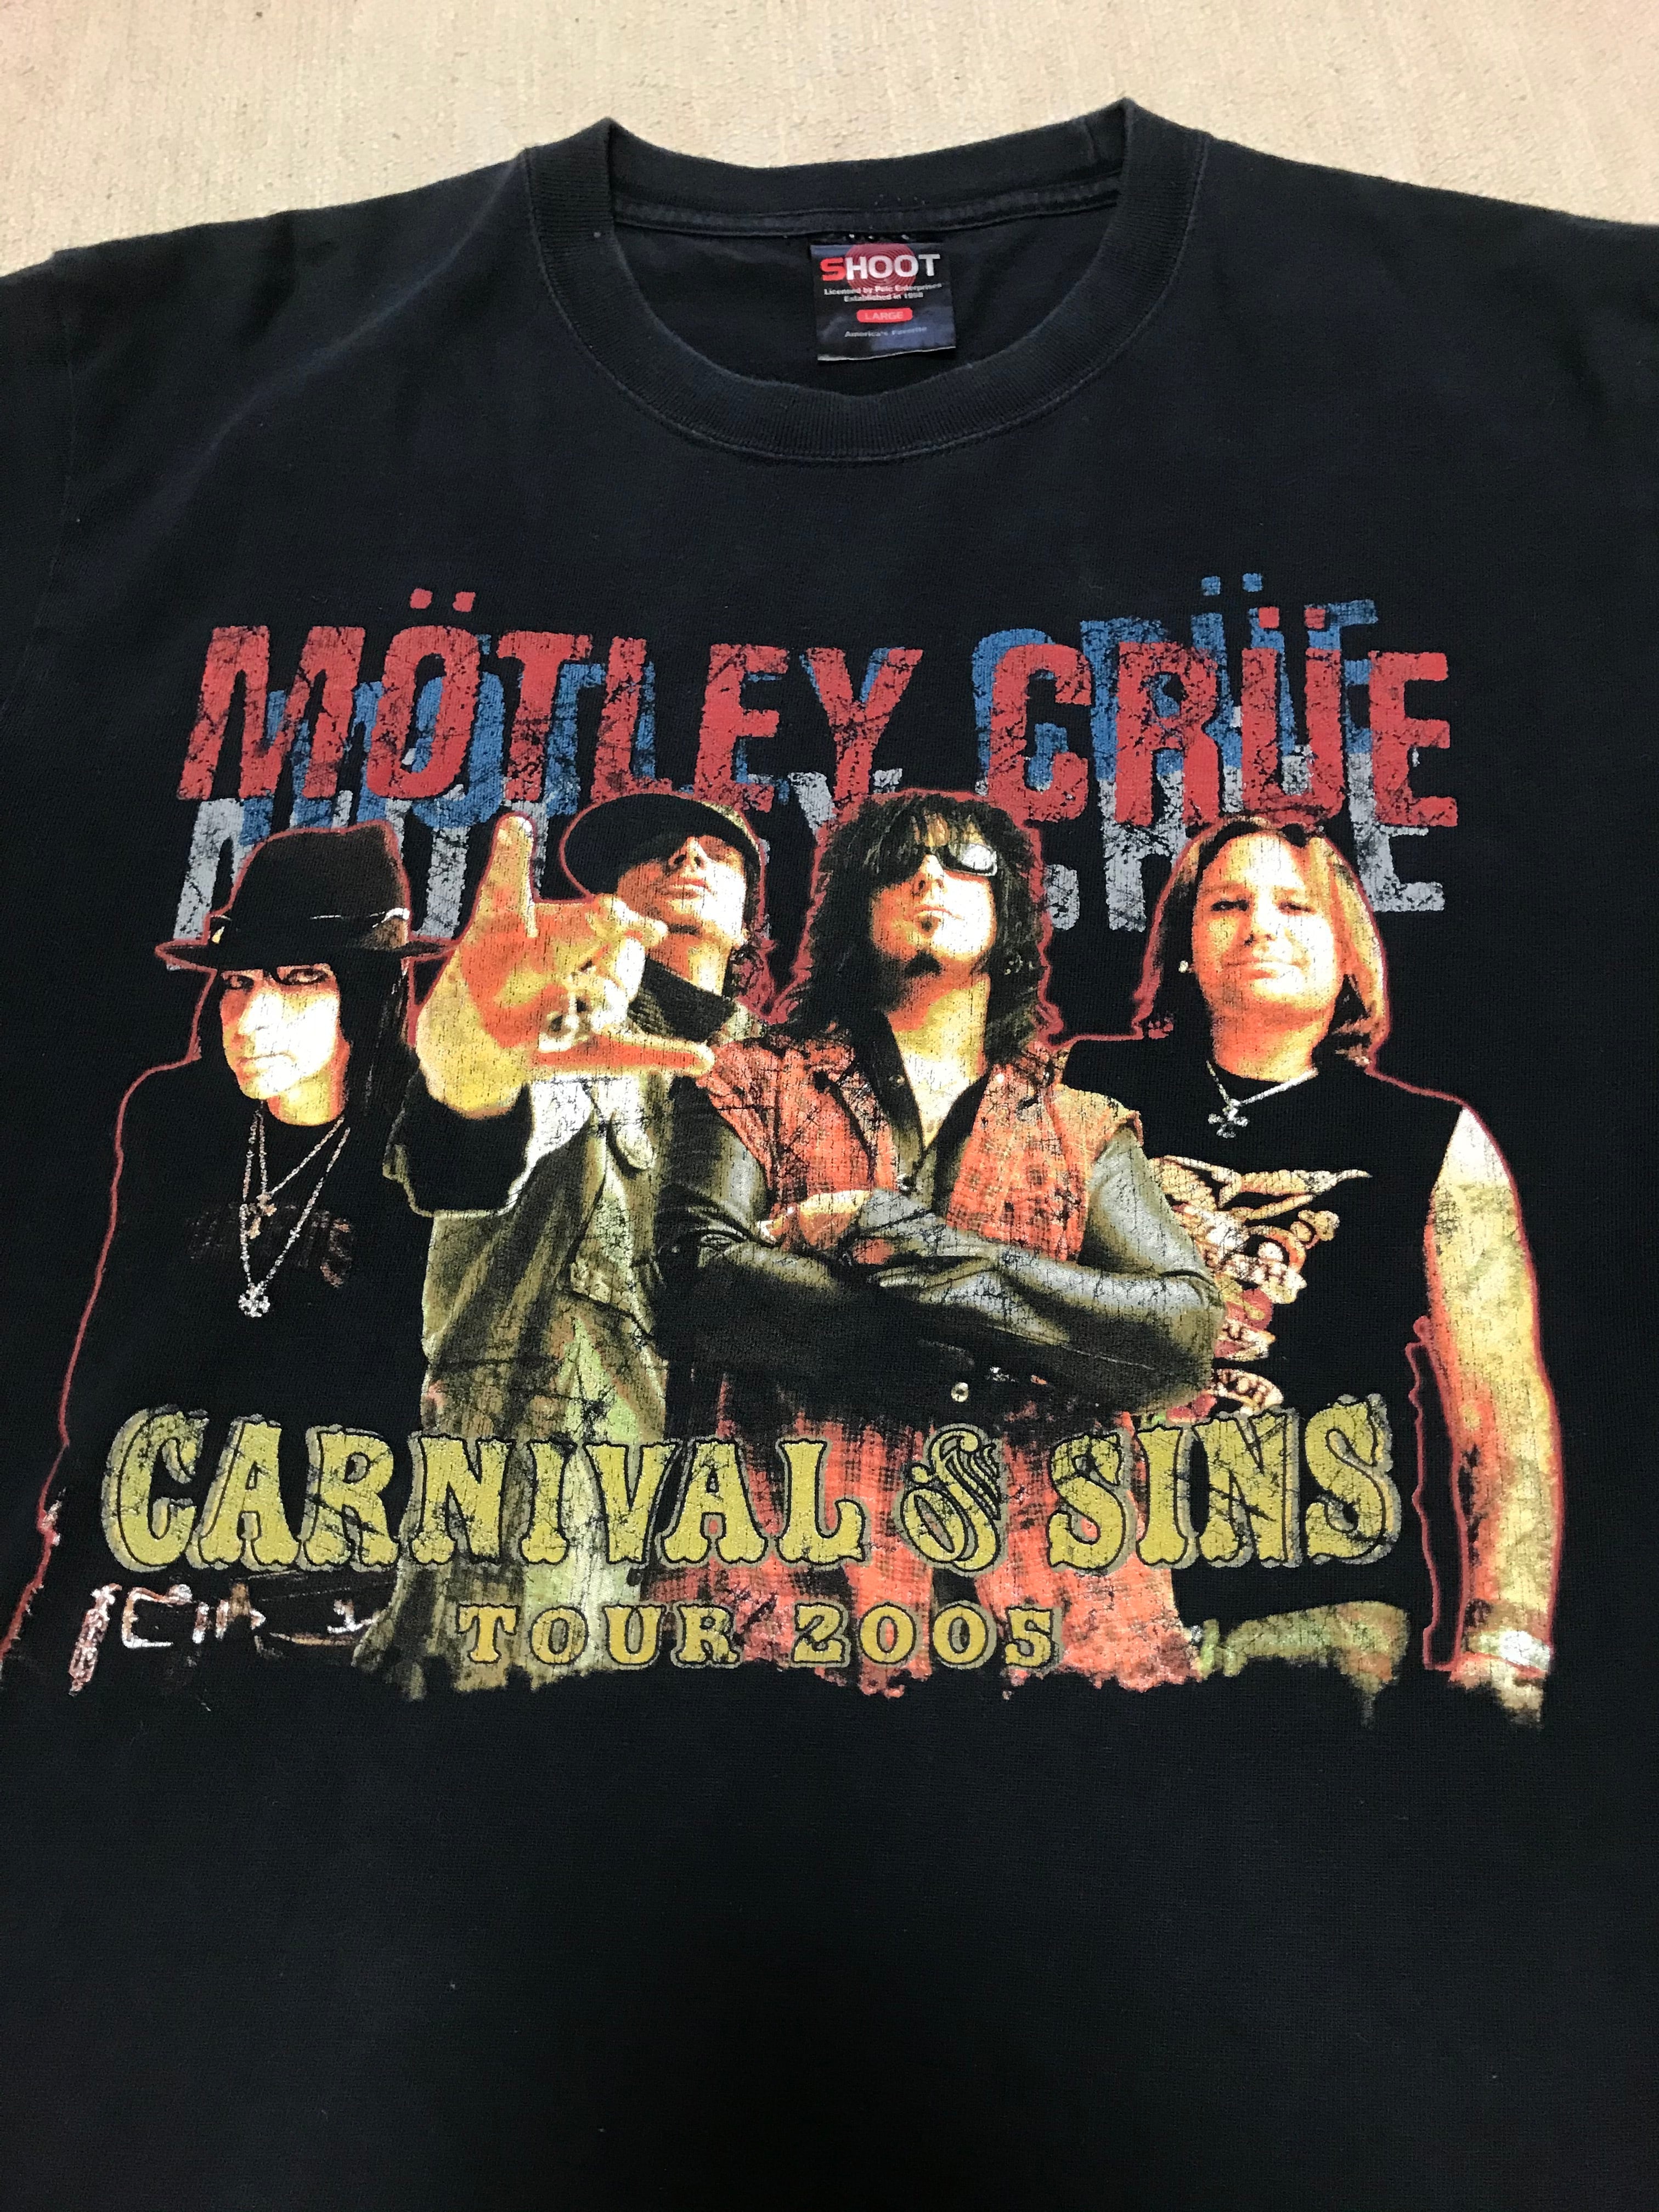 ビンテージ MOTLEY CRUE 2005年 ツアー Tシャツ